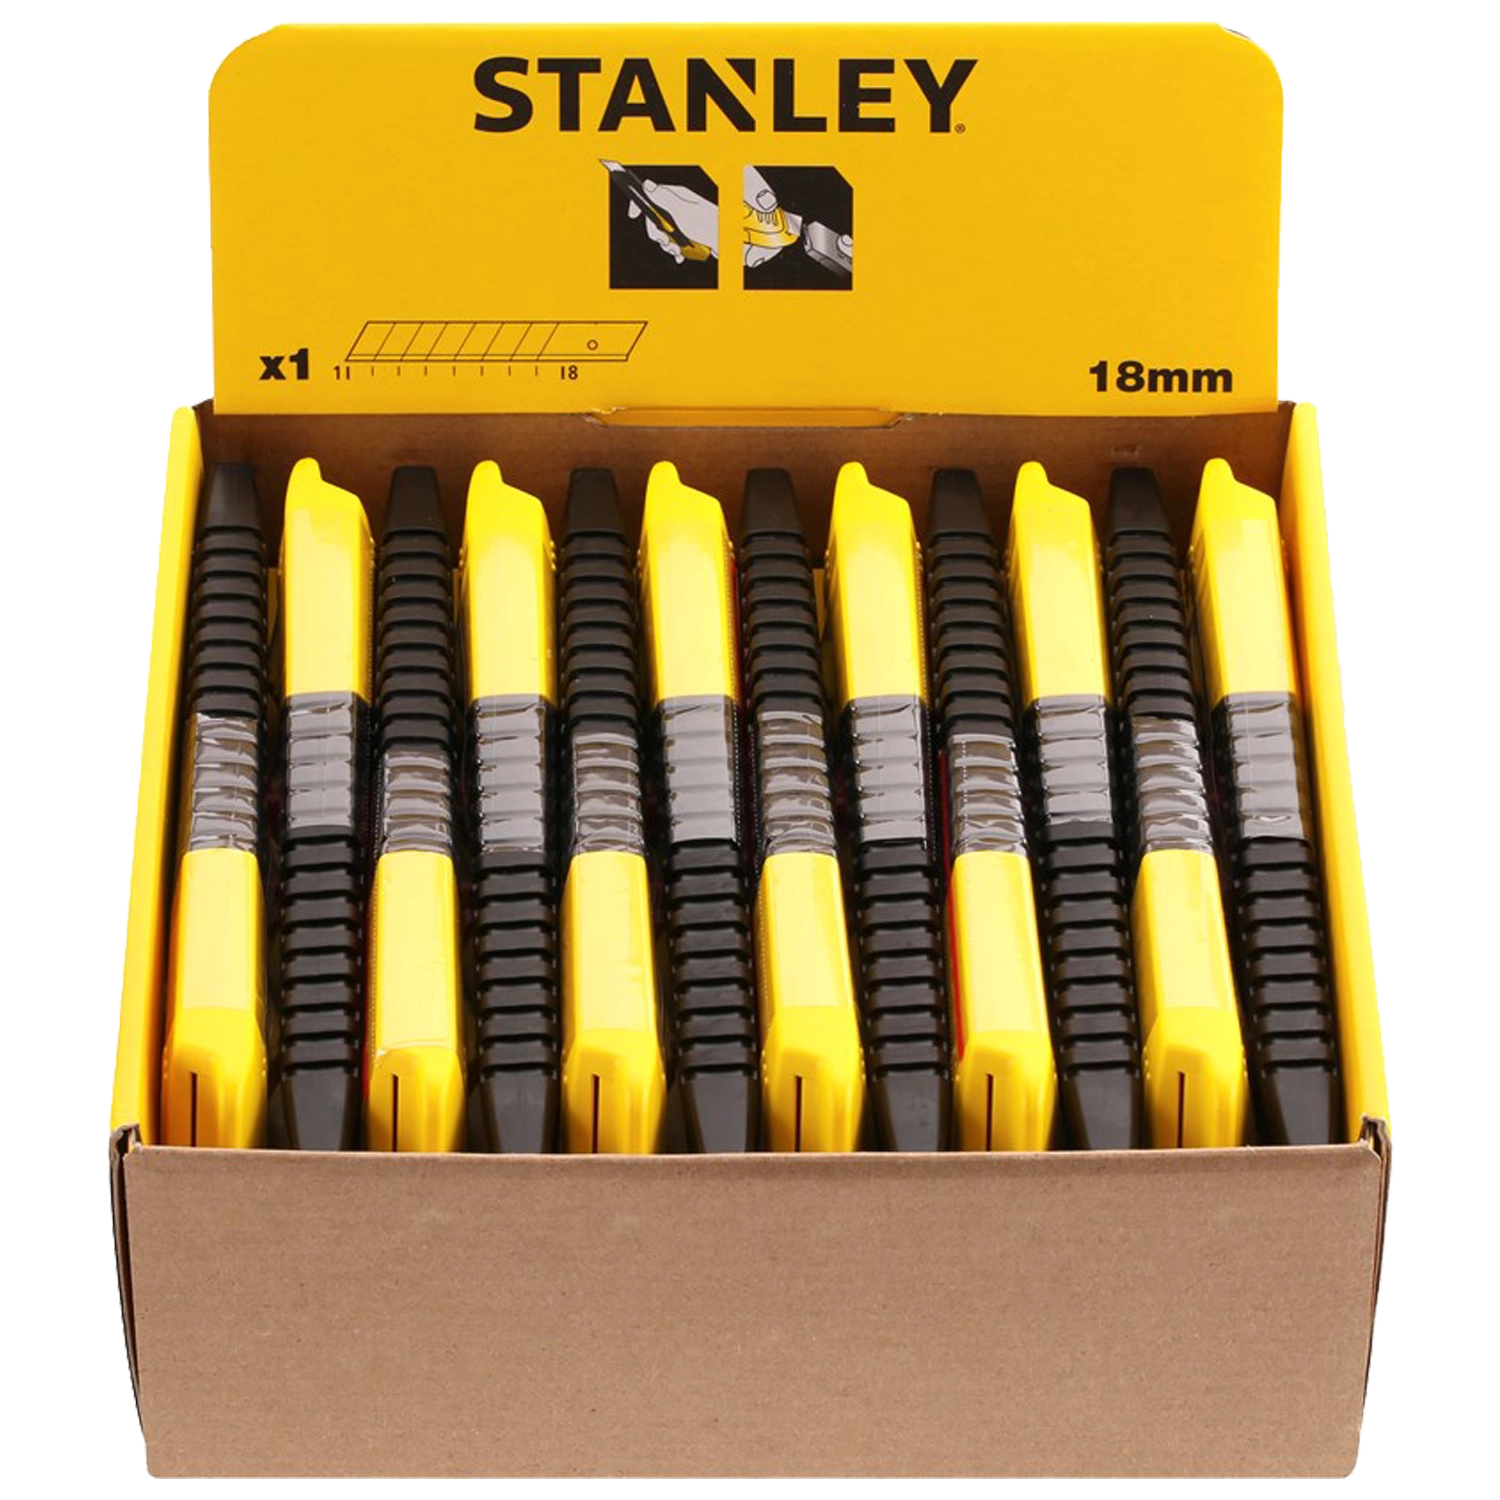 Geelzwart Stanley breekmes. 9 afbreekmesjes. Gele drukschuifknop. Schuifbaar uiteinde voor verwijderen mes.